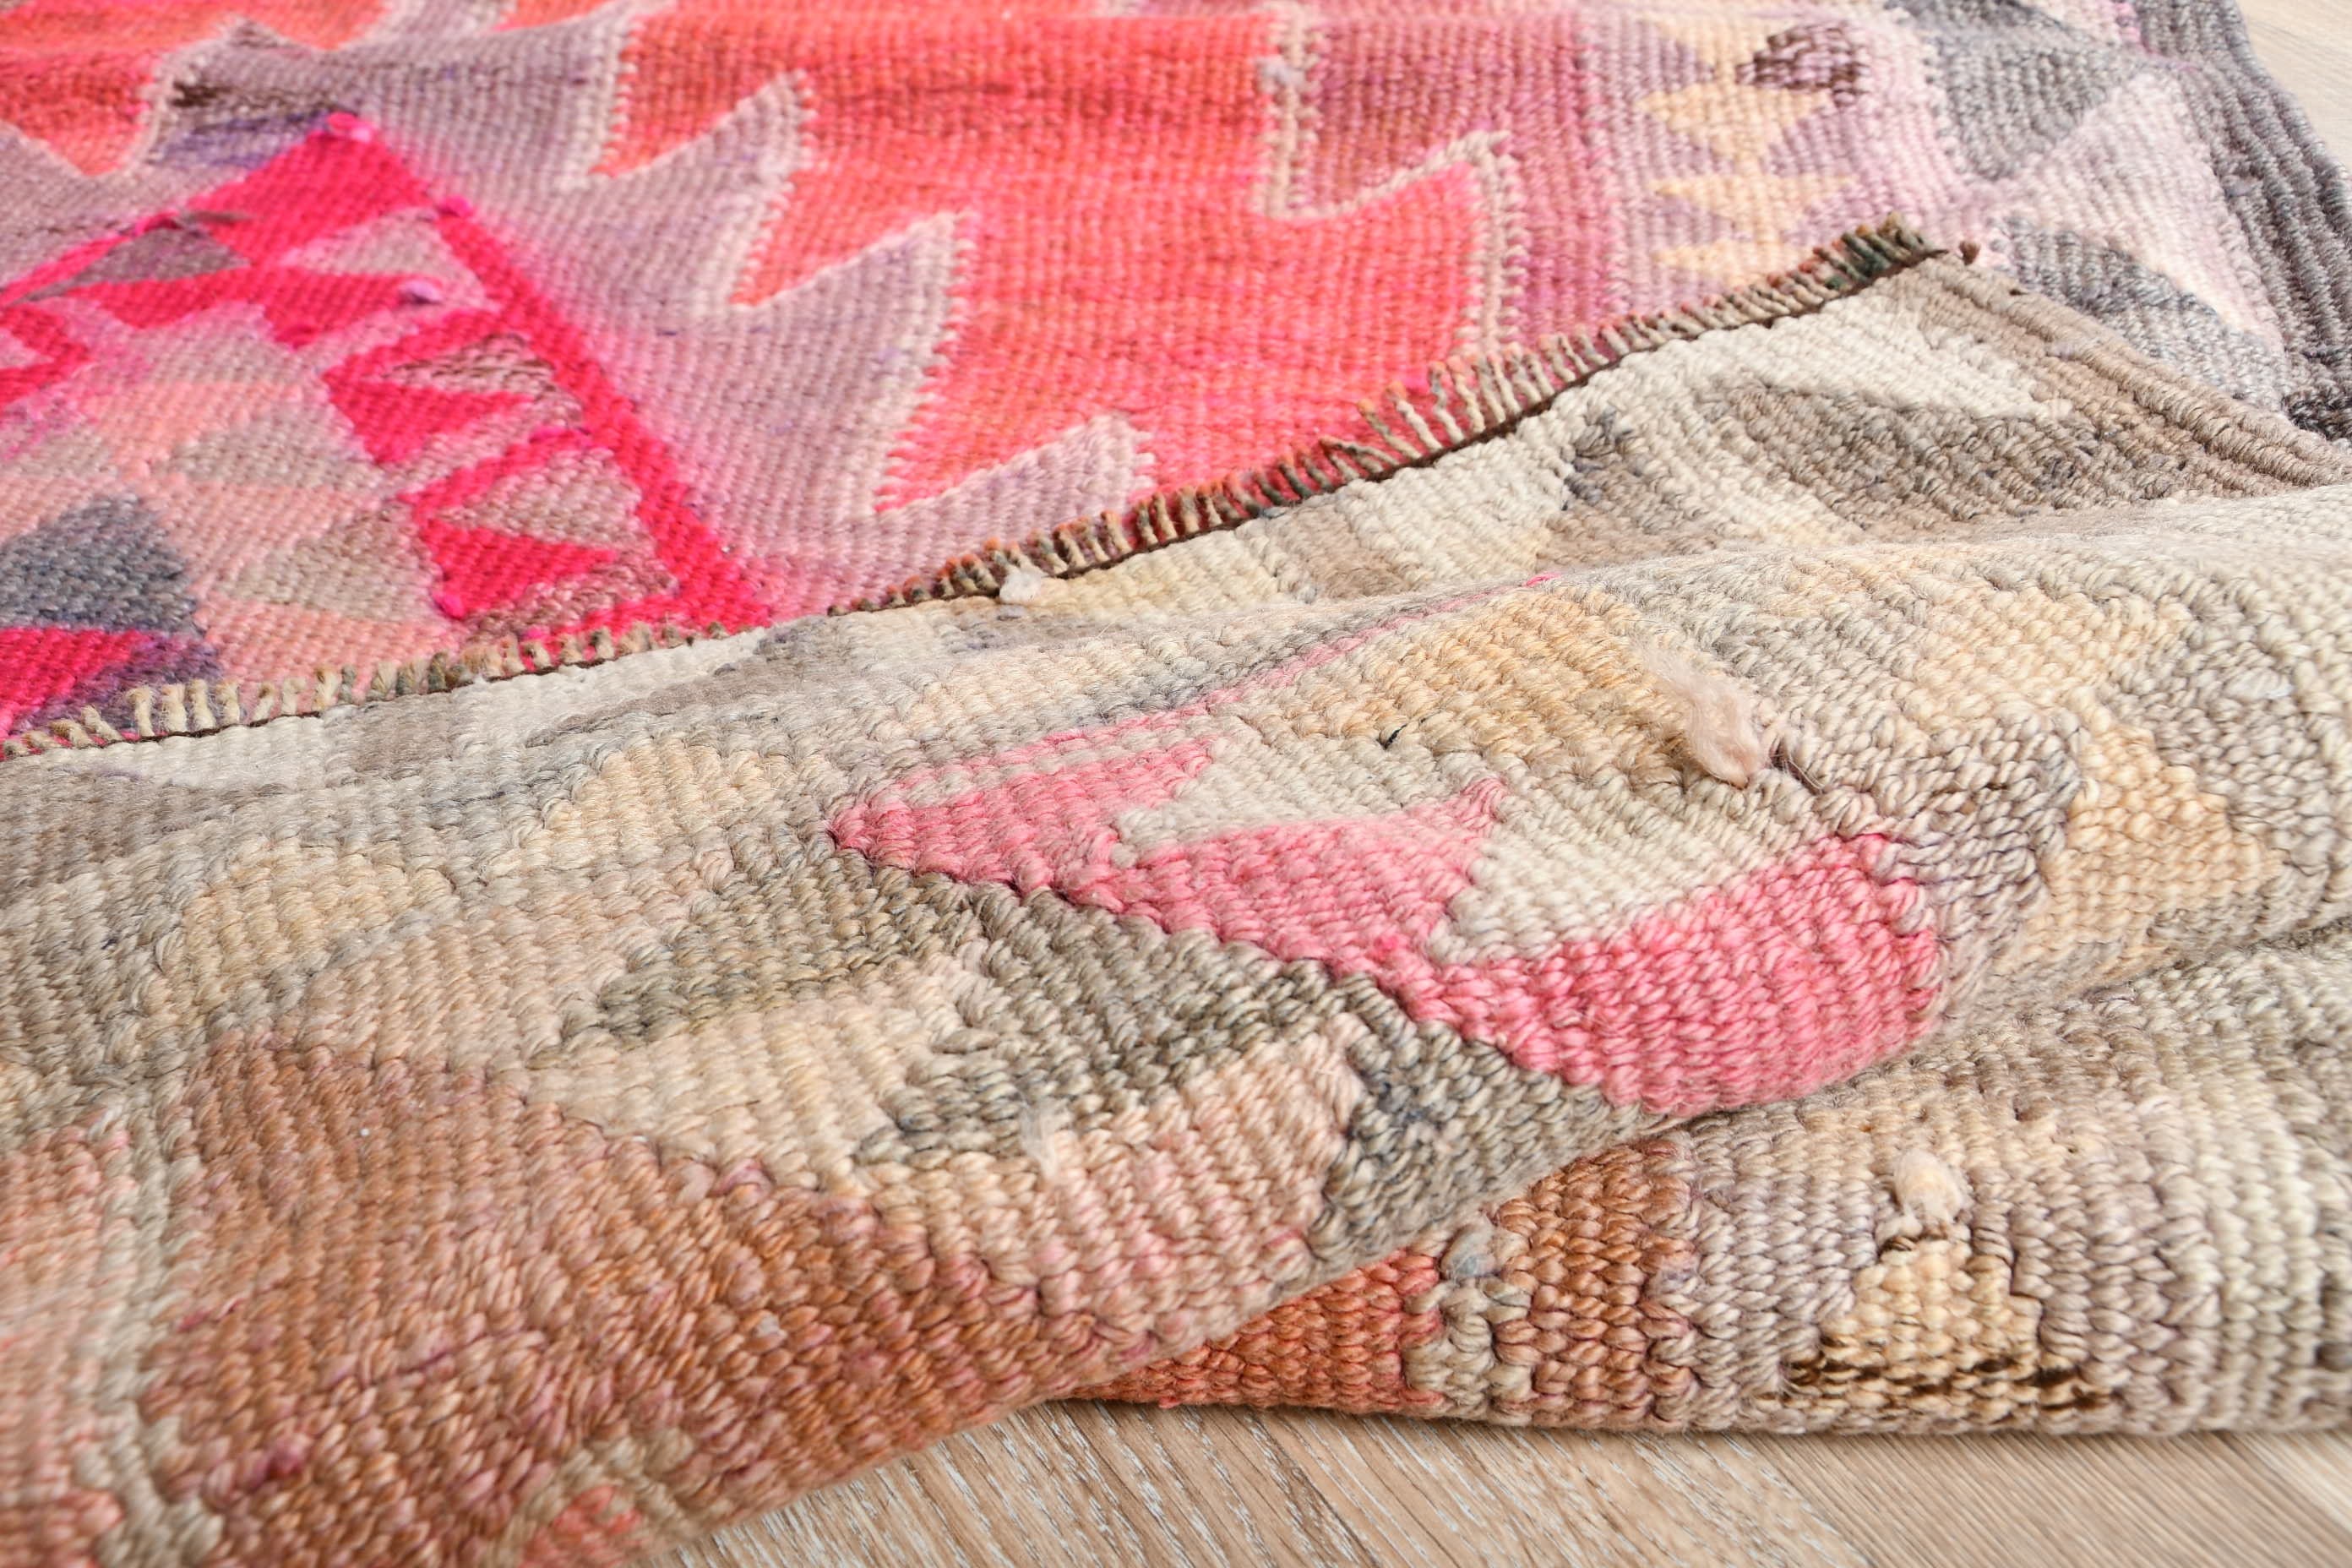 Turkish Rug, Wool Rug, Pink Oriental Rug, Stair Rugs, Vintage Rug, Rugs for Kitchen, 3.1x11.1 ft Runner Rug, Moroccan Rugs, Corridor Rug